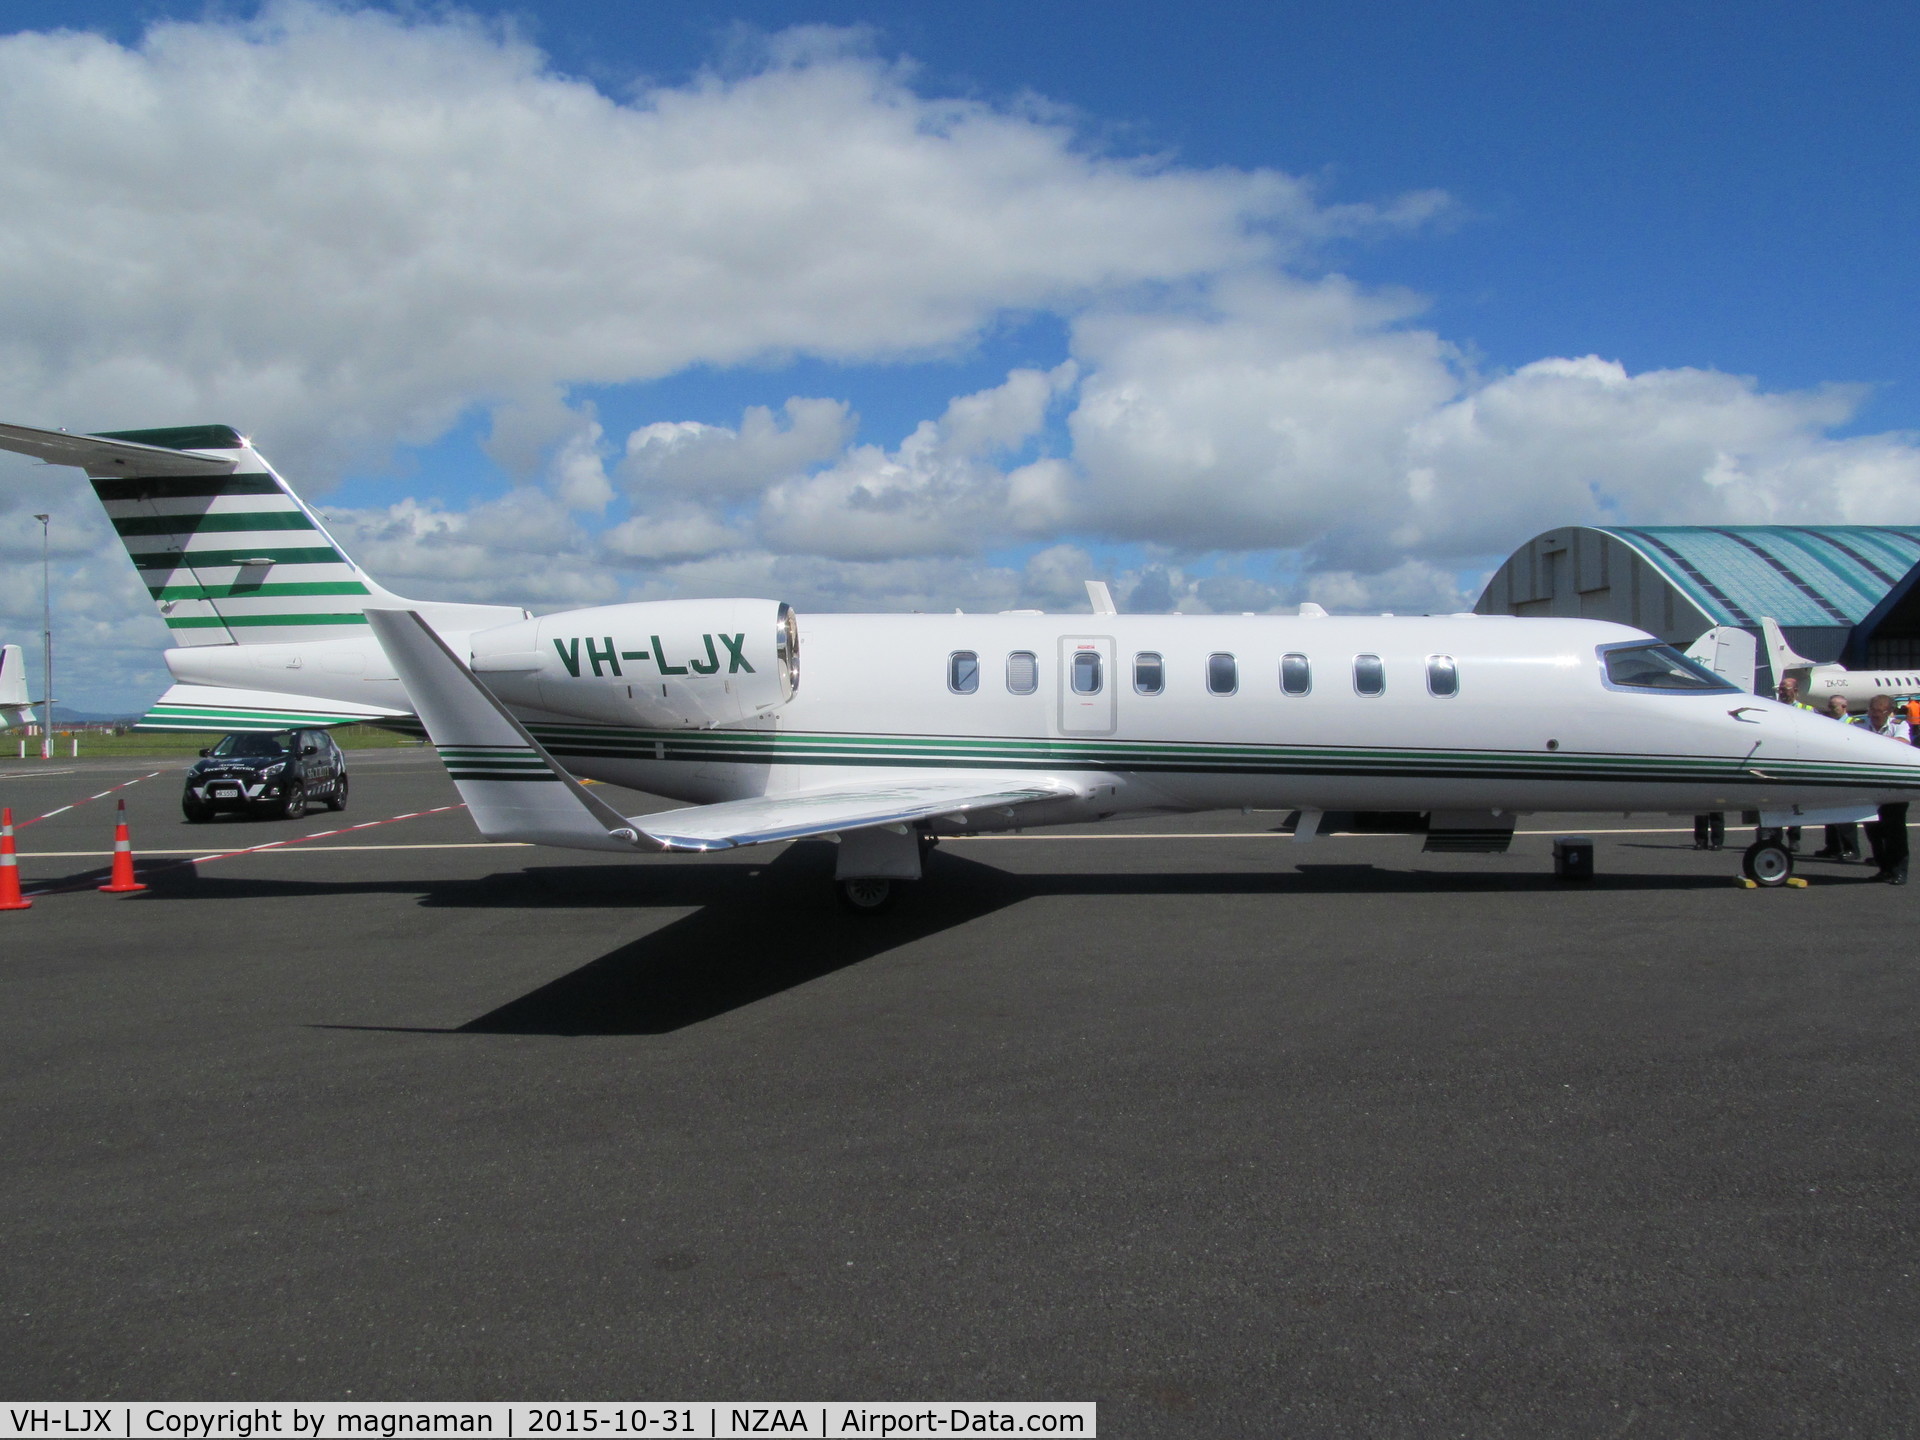 VH-LJX, 1999 Learjet 45 C/N 45-056, Medic flight